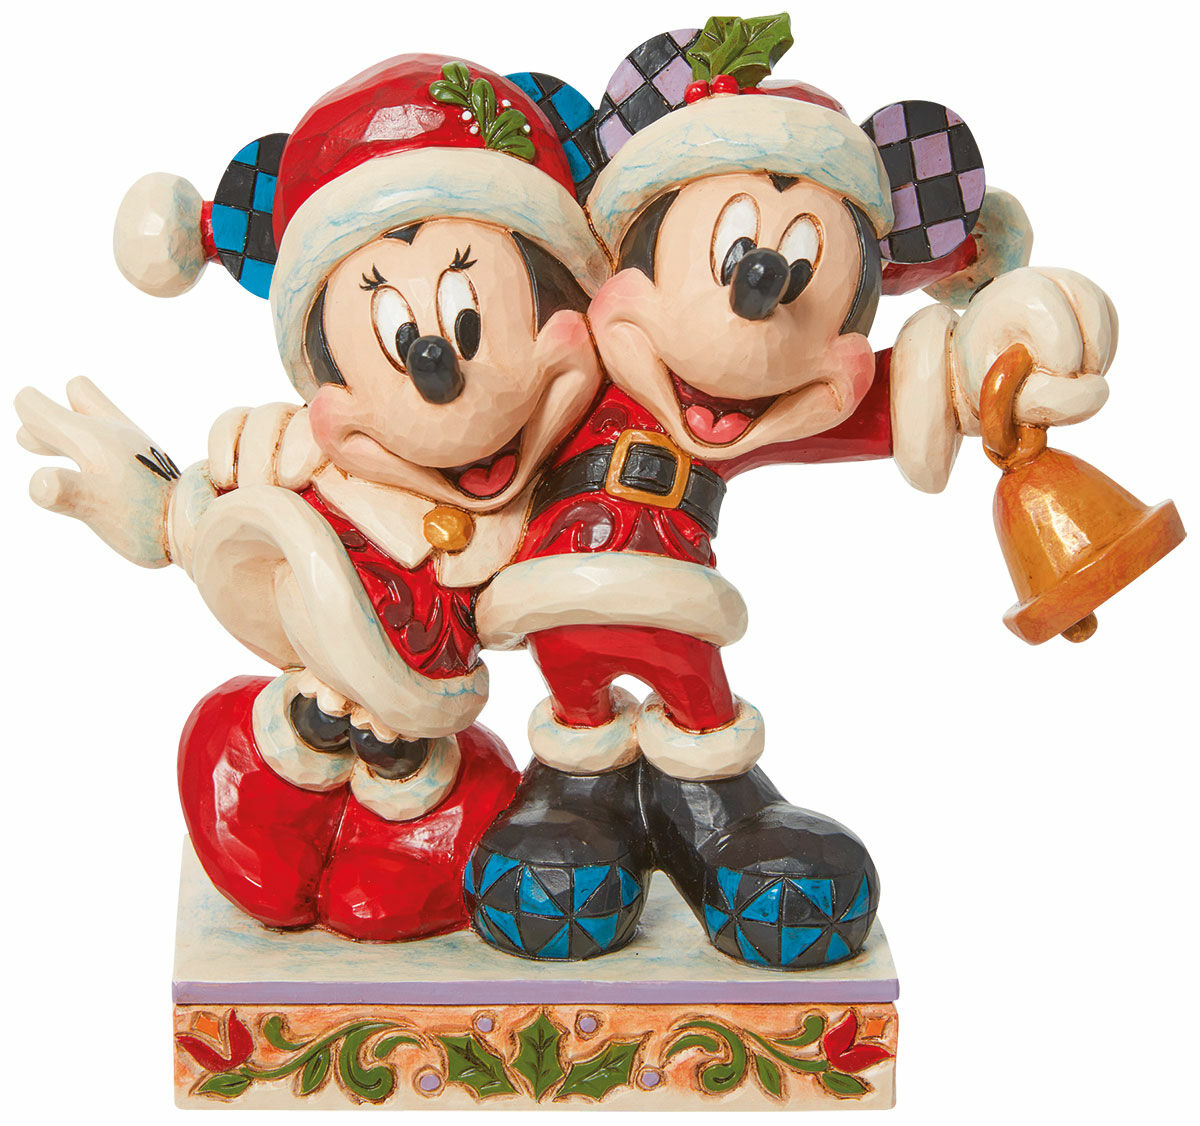 Skulptur "Minnie og Mickey med klokker", støbt von Jim Shore